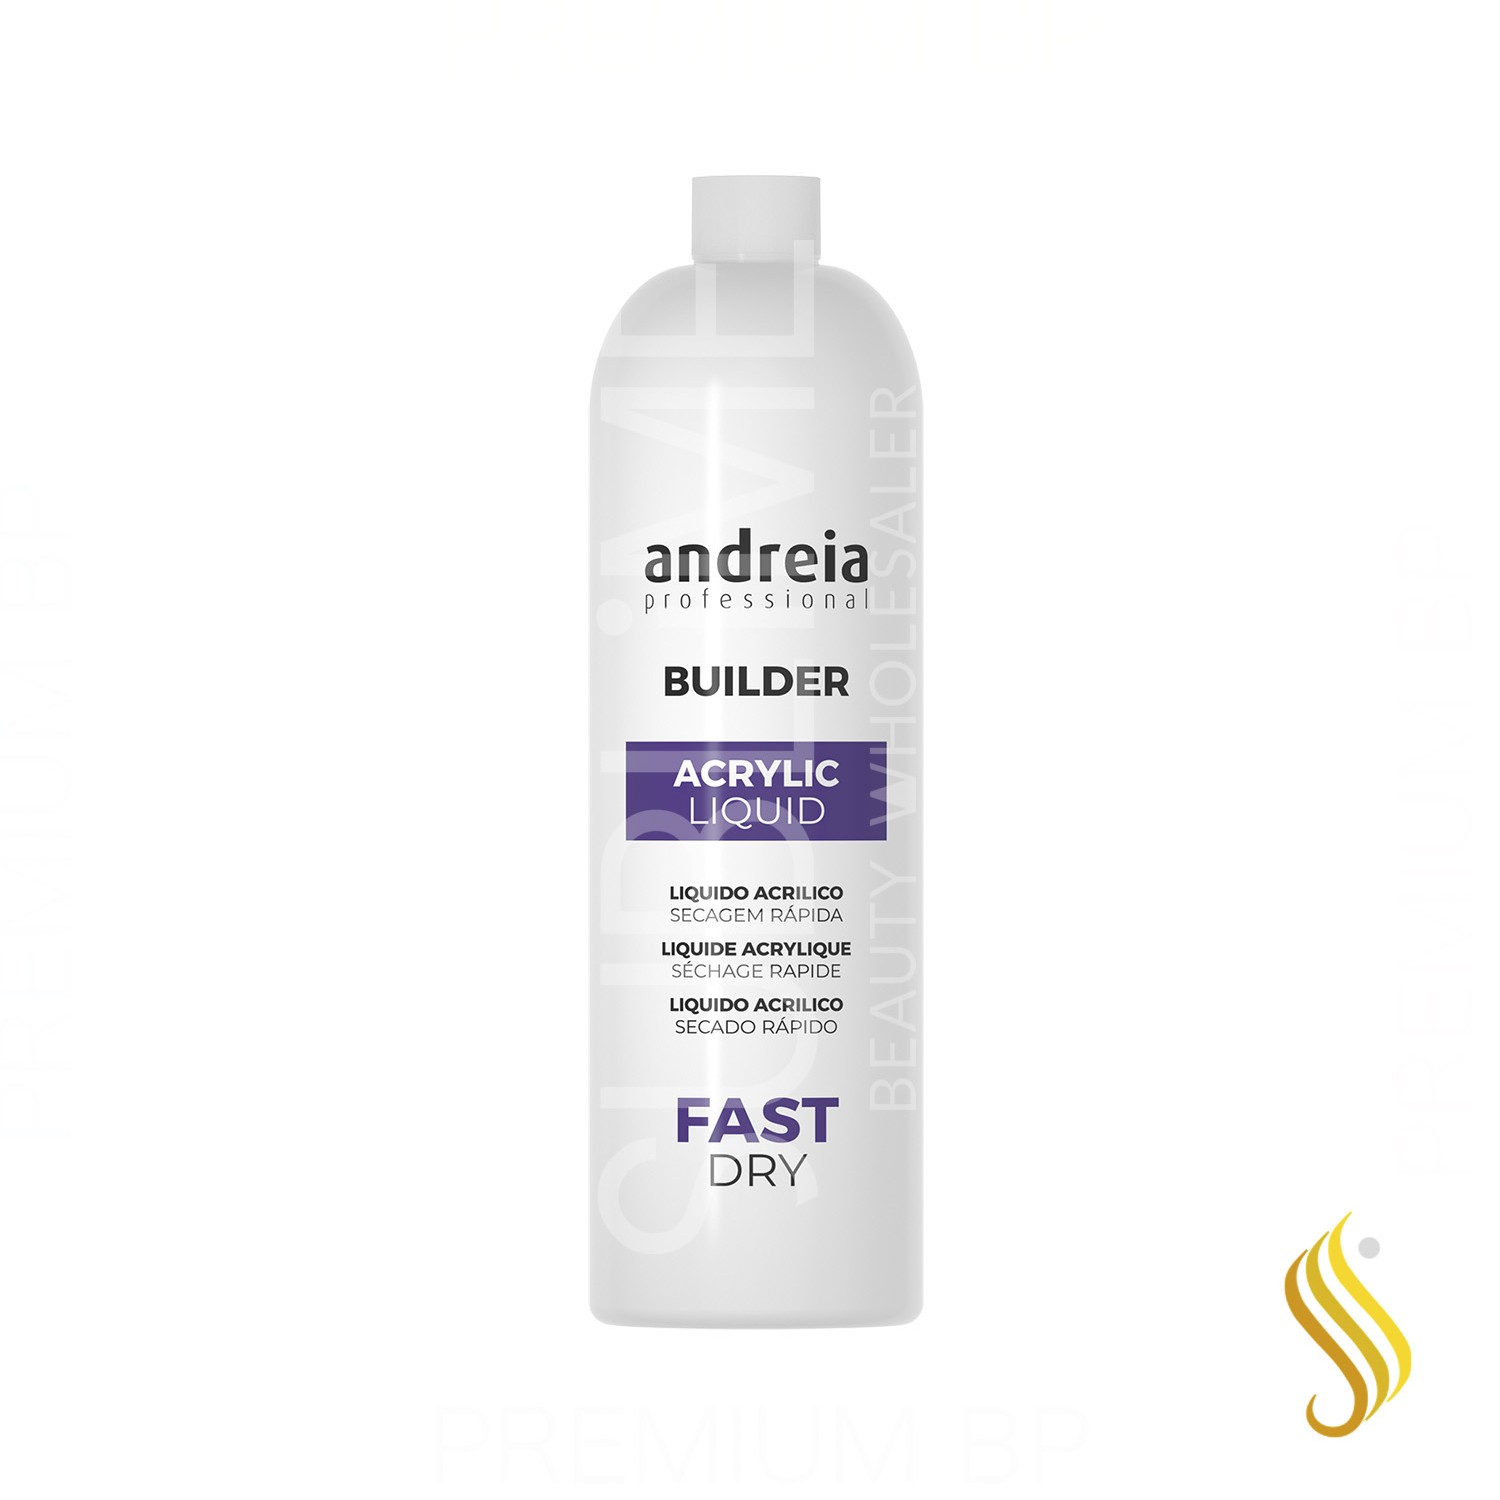 Andreia Professional Builder Acrylic Liquid Fast Dry Liquido Acrilico Secado Rapido 1000 ml